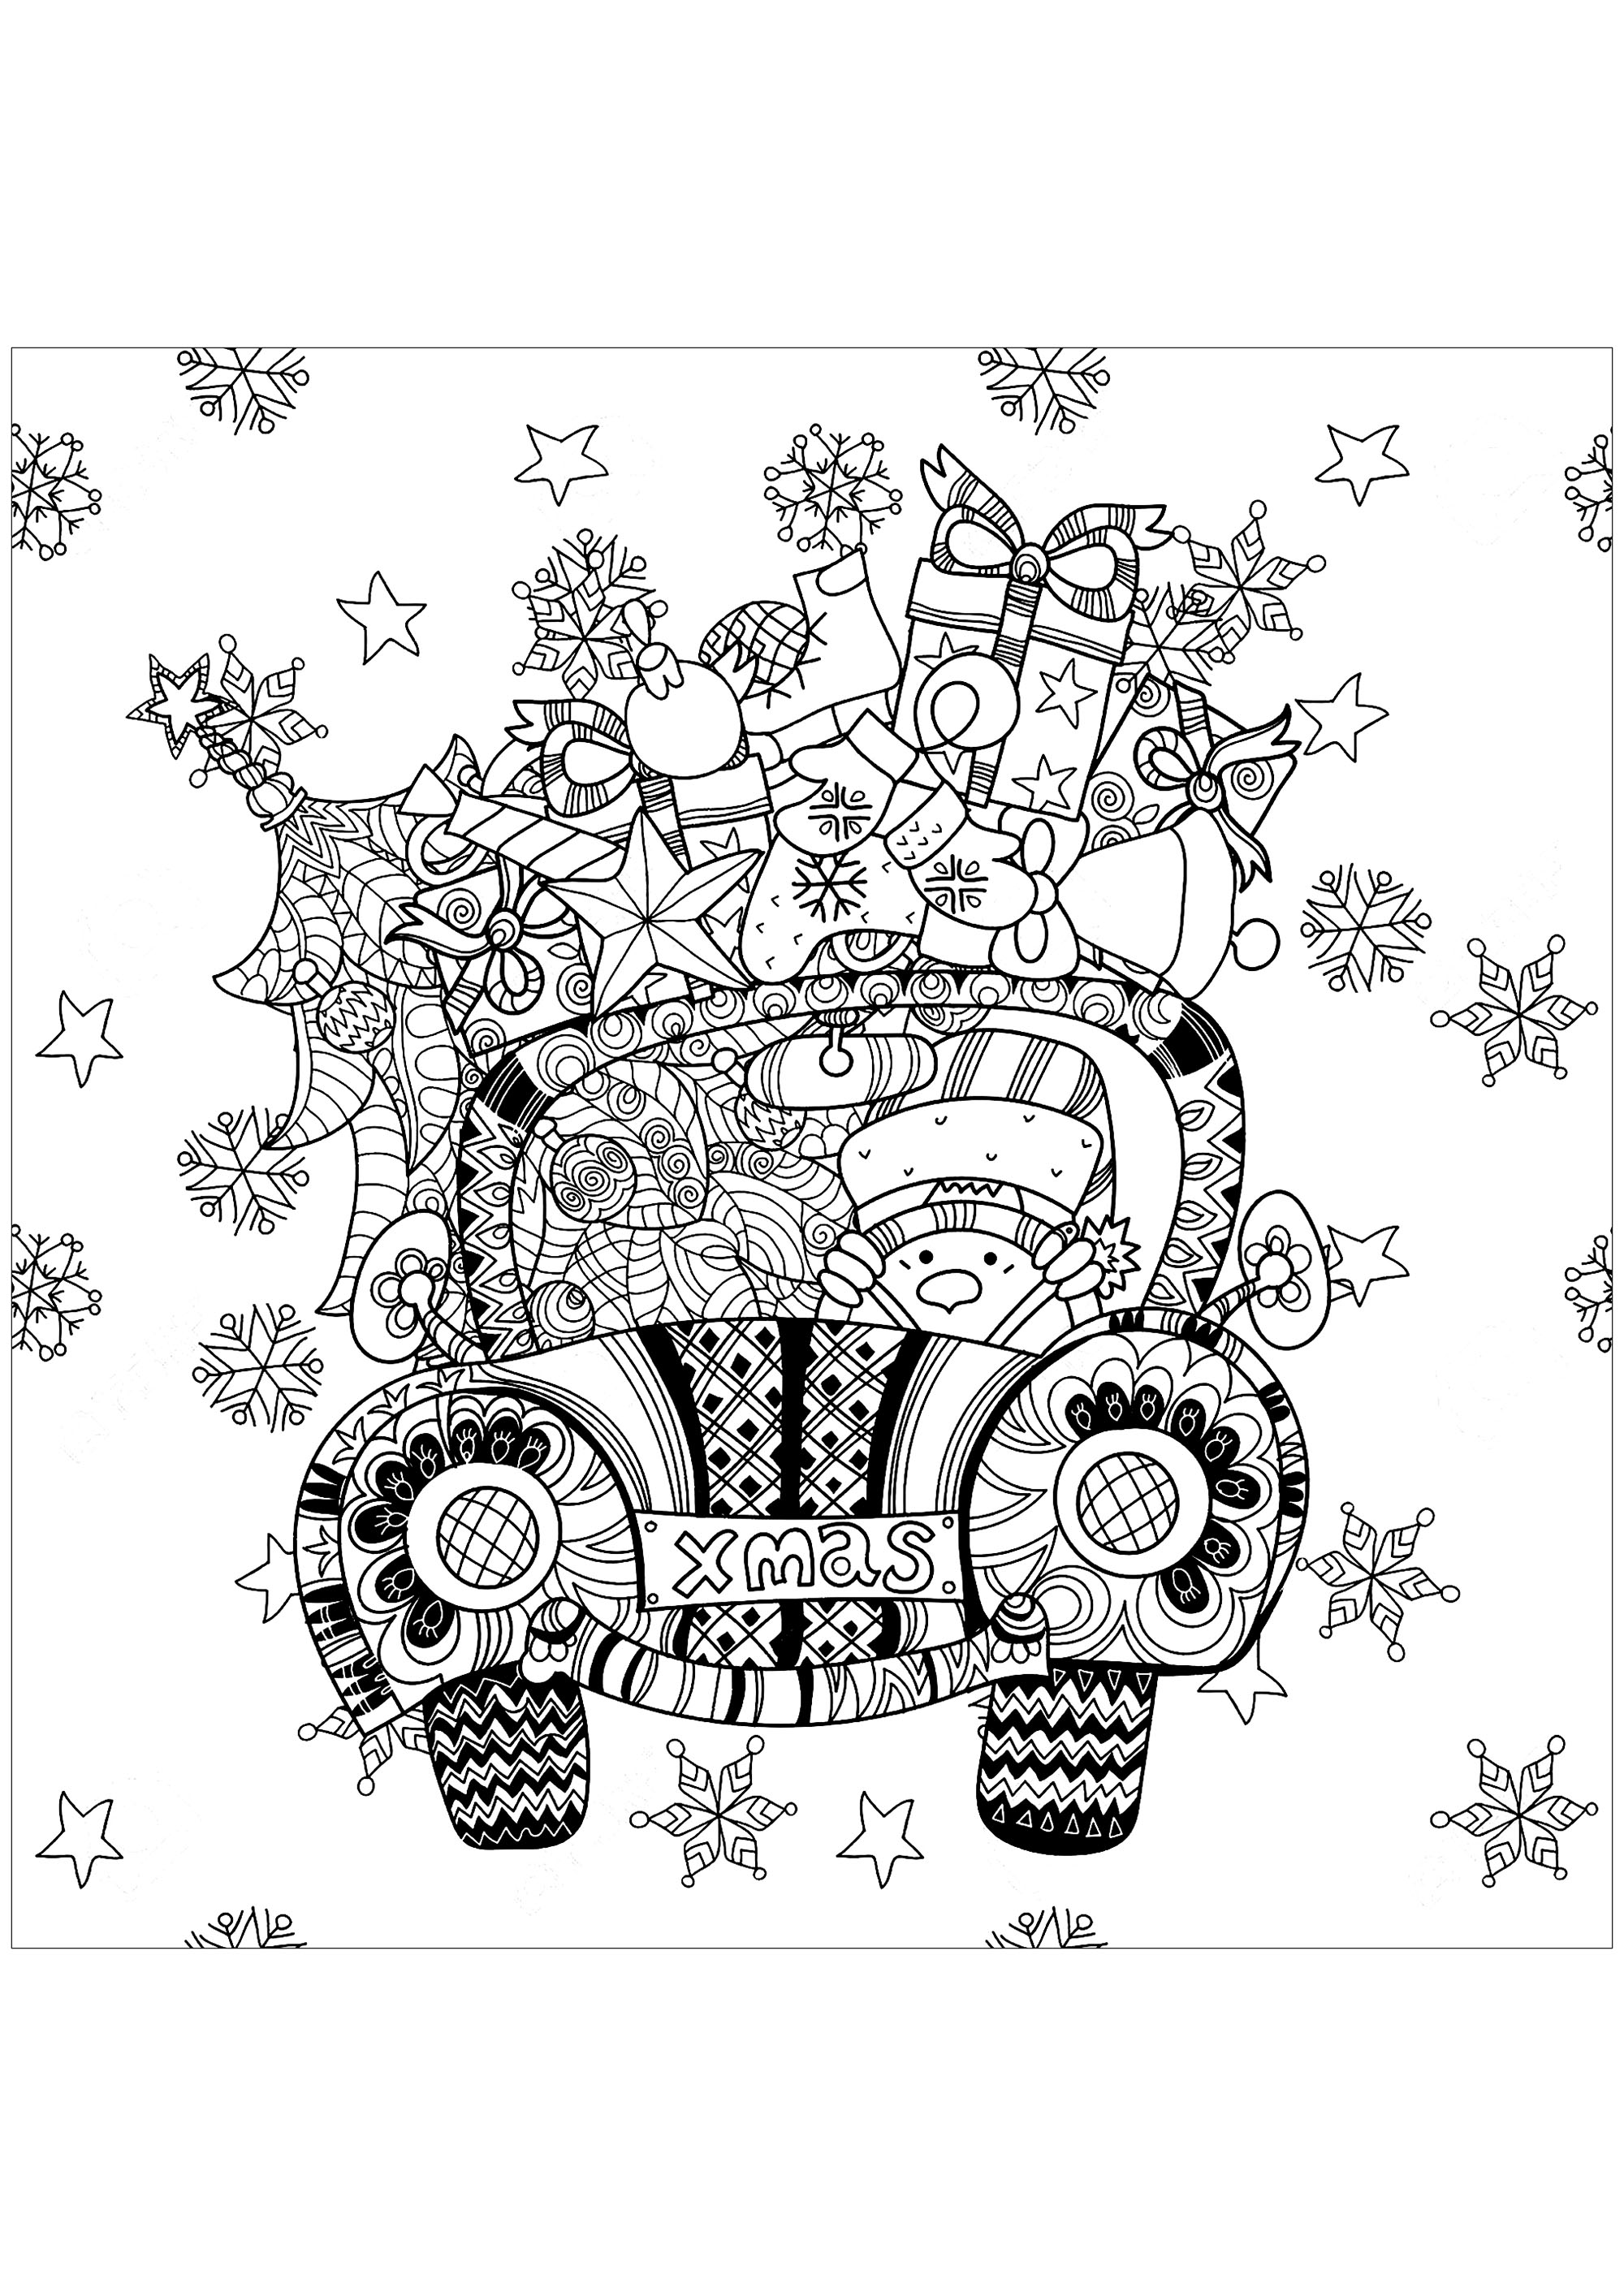 Ajoutez des couleurs à ces cadeaux qui remplissent cette petite voiture conduite par un bonhomme de neige. Ce coloriage est un moyen parfait pour vous mettre dans l'esprit de Noël. Il est amusant et inspirant, et vous pouvez le personnaliser à votre guise.Alors prenez vos crayons de couleur et amusez-vous!, Source : 123rf   Artiste : Ирина Язева